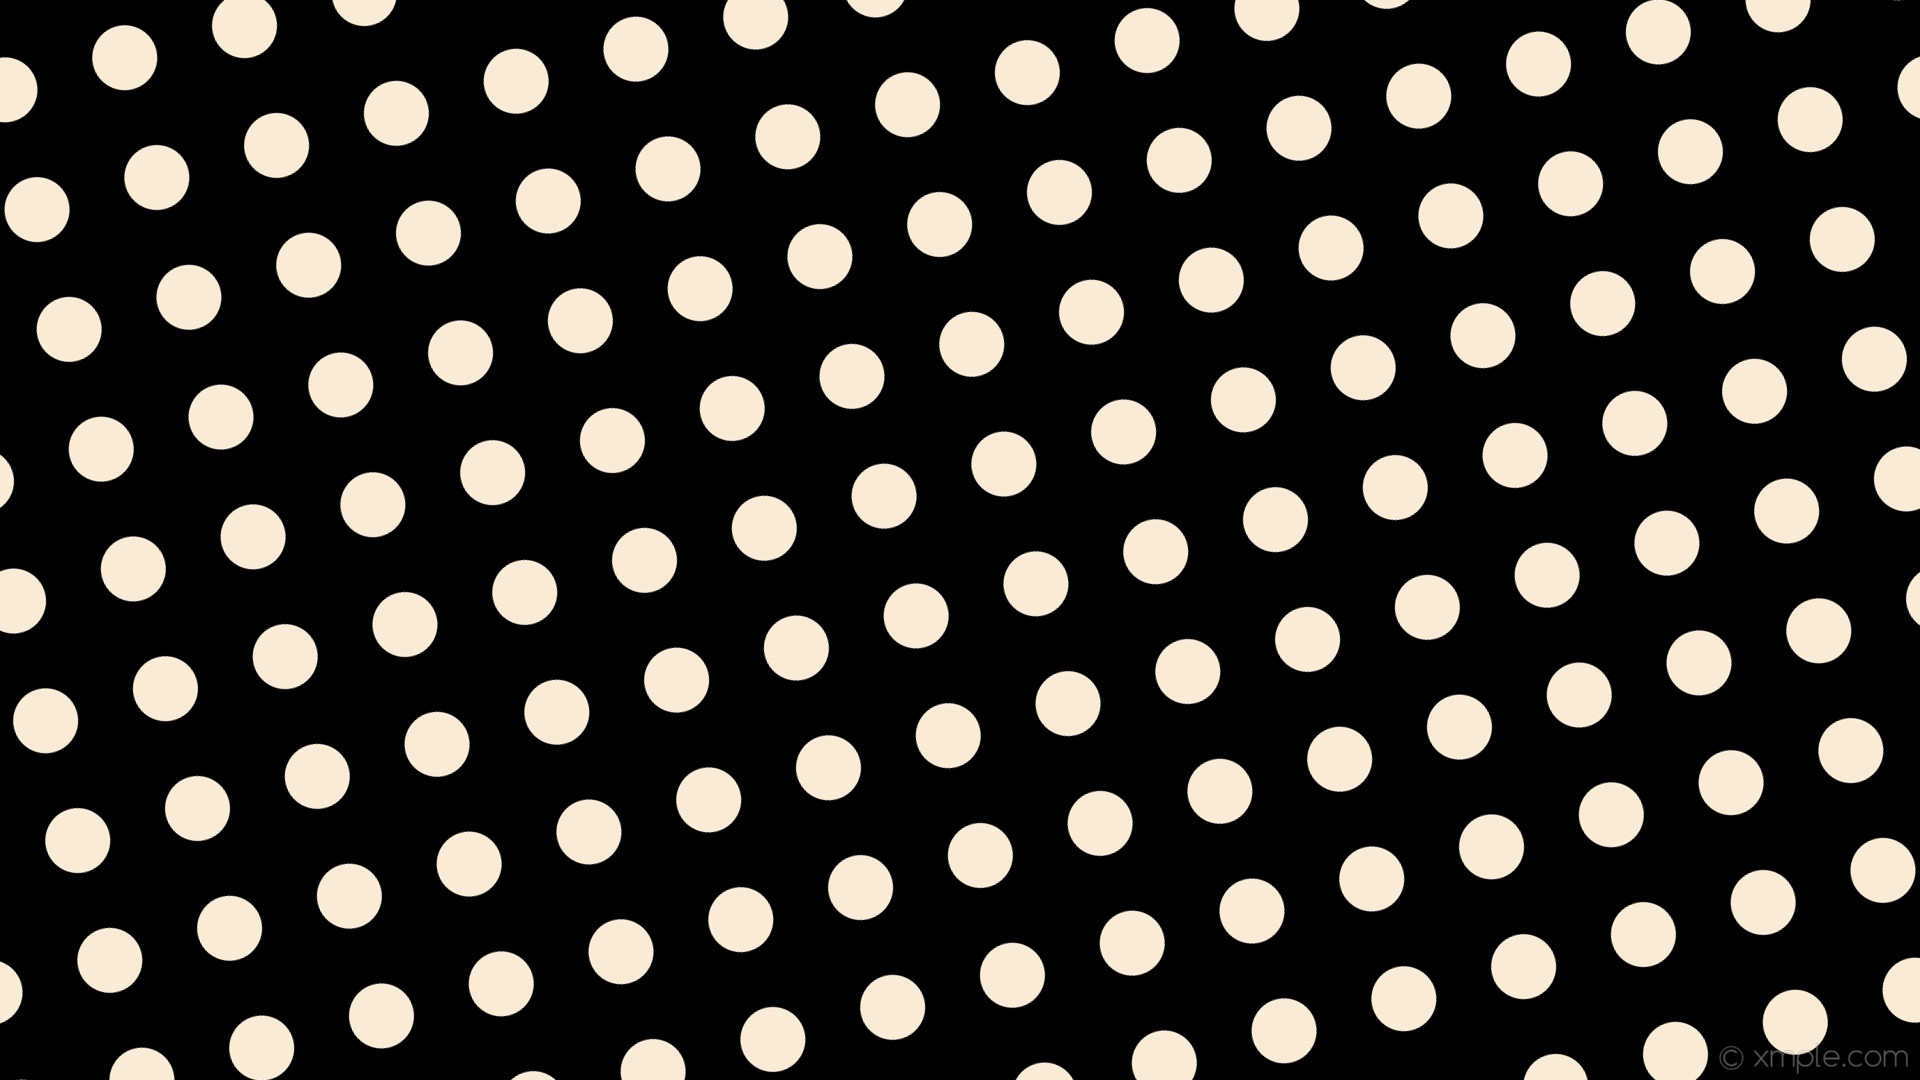 1920x1080 wallpaper spots white dots polka black antique white #000000 #faebd7 285Â°  65px 124px